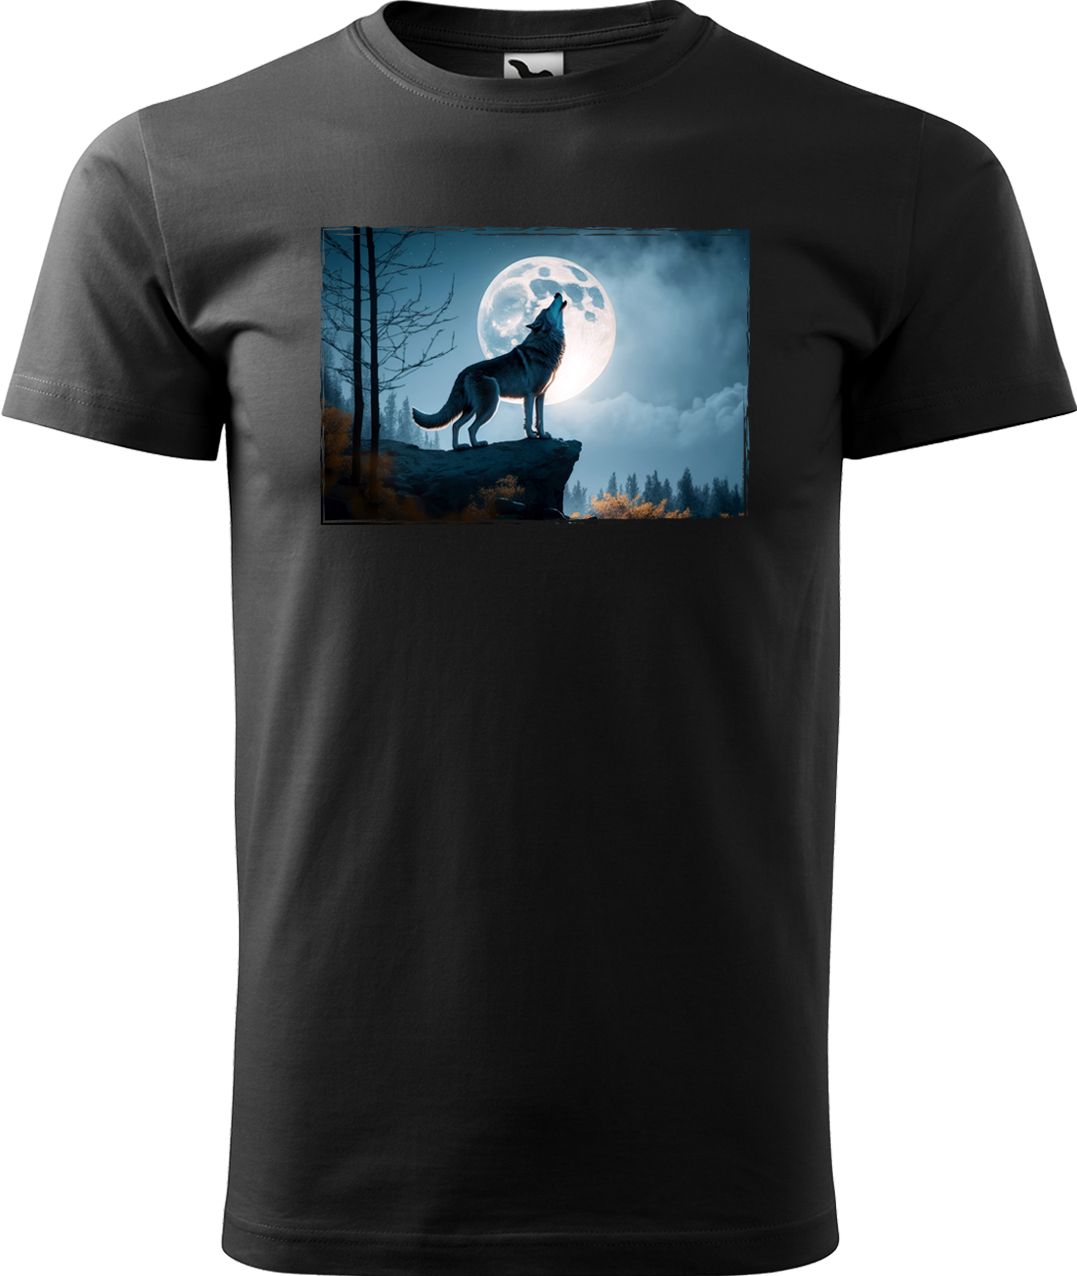 Pánské tričko s vlkem - Vyjící vlk Velikost: S, Barva: Černá (01)